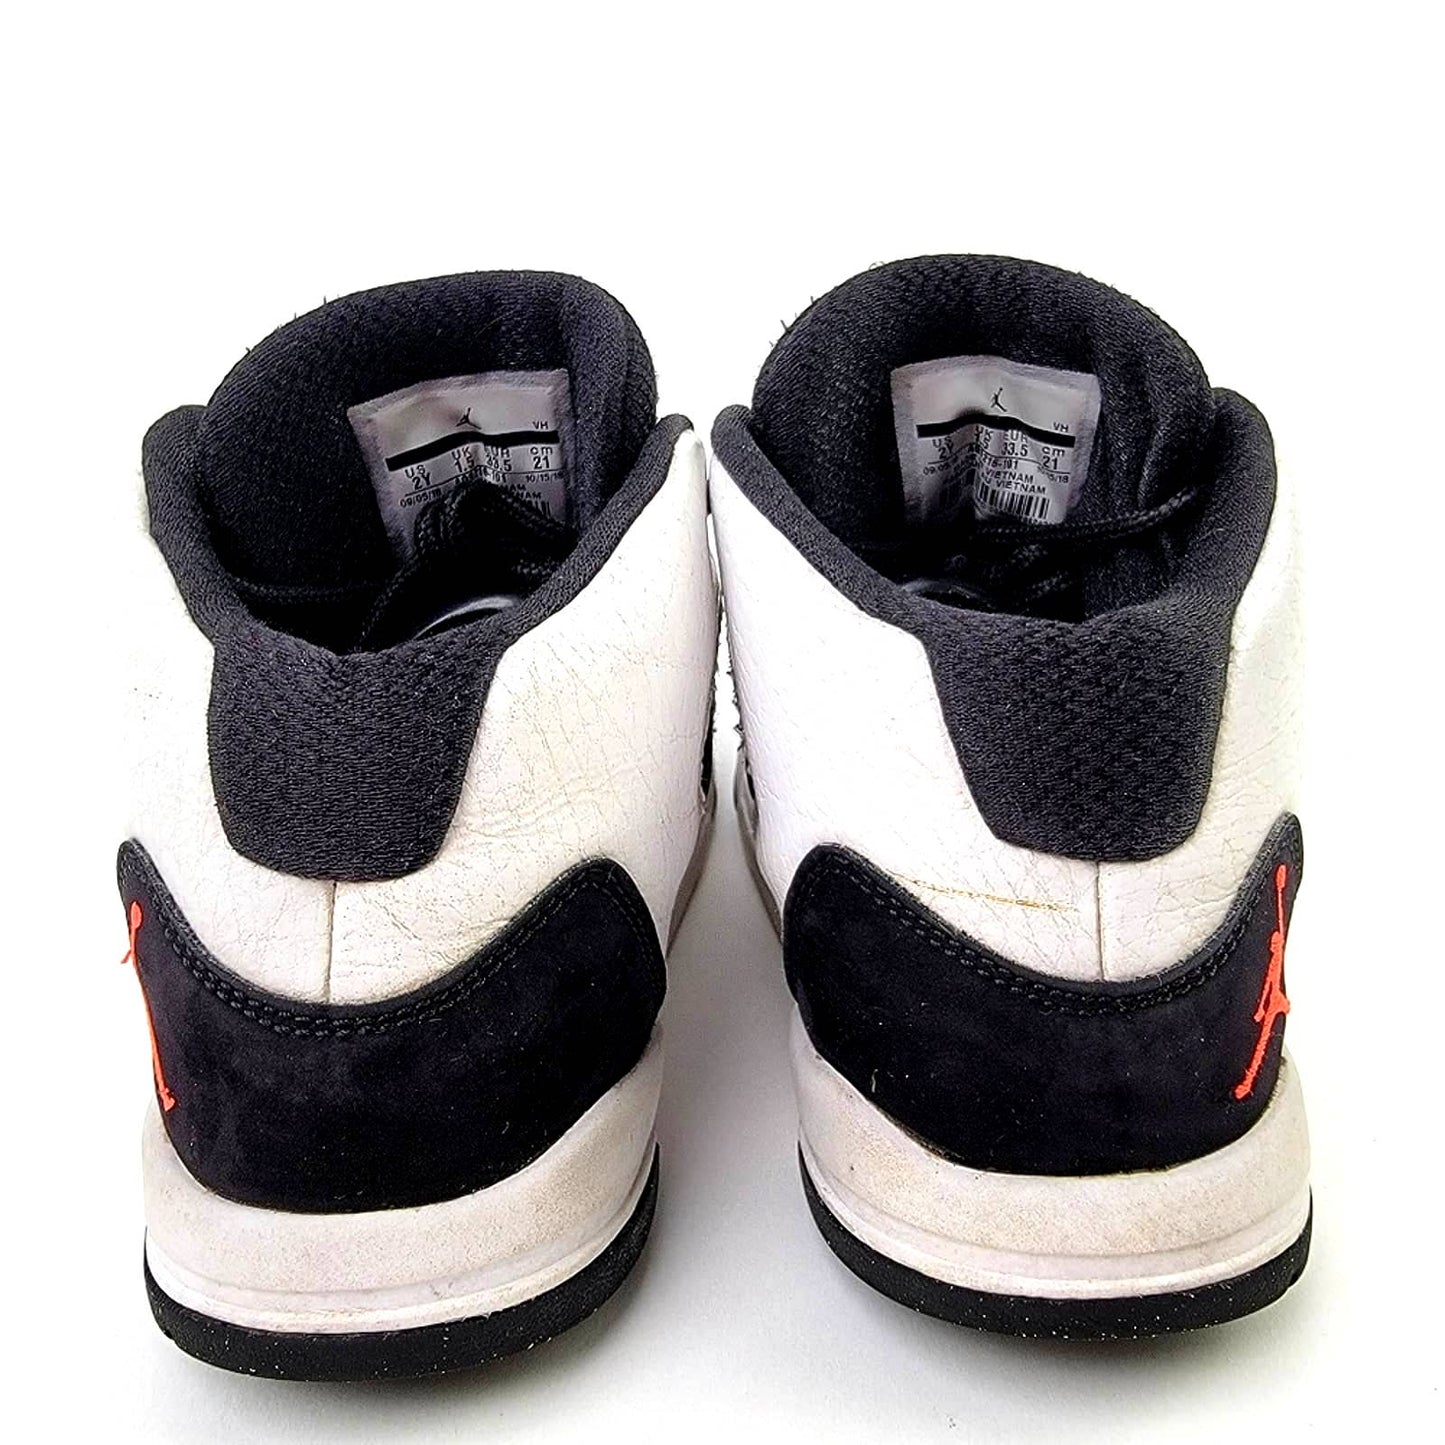 Jordan Max Aura PS Sneakers - 2Y